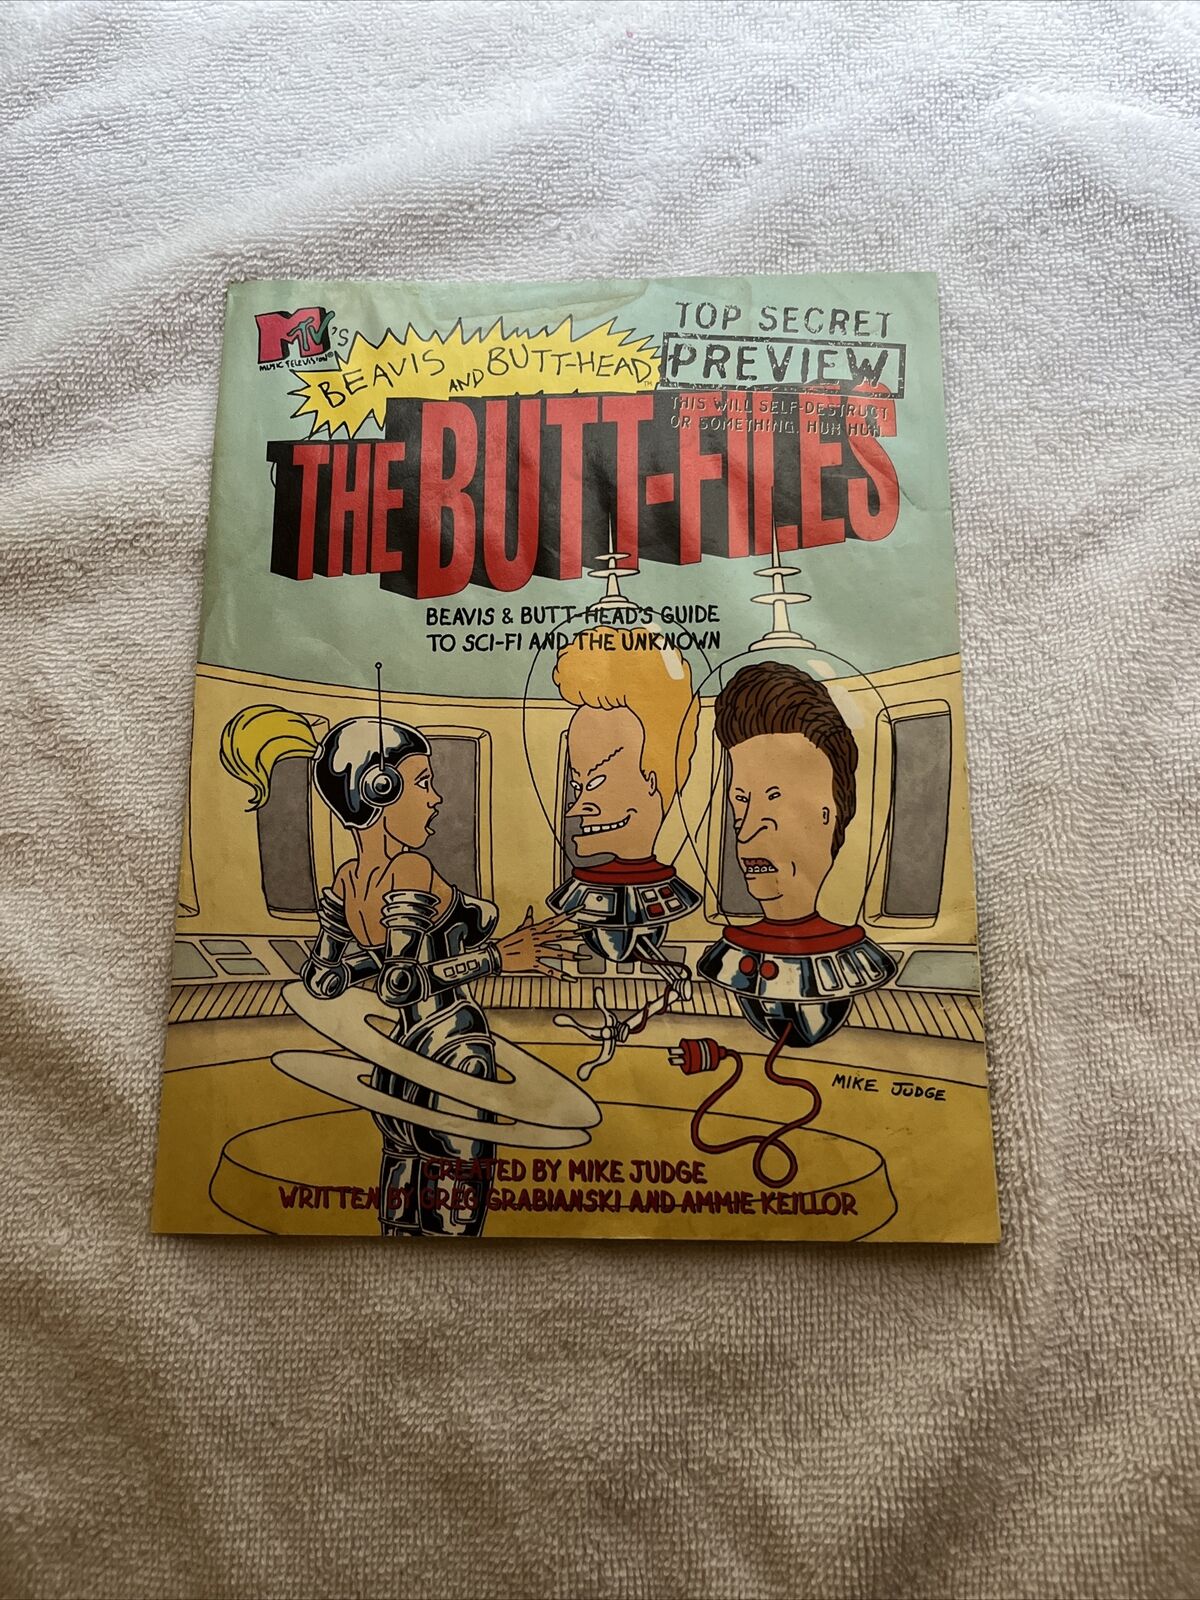 Rare 1997 BEAVIS AND BUTT-HEAD The Butt-Files Top Secret Preview